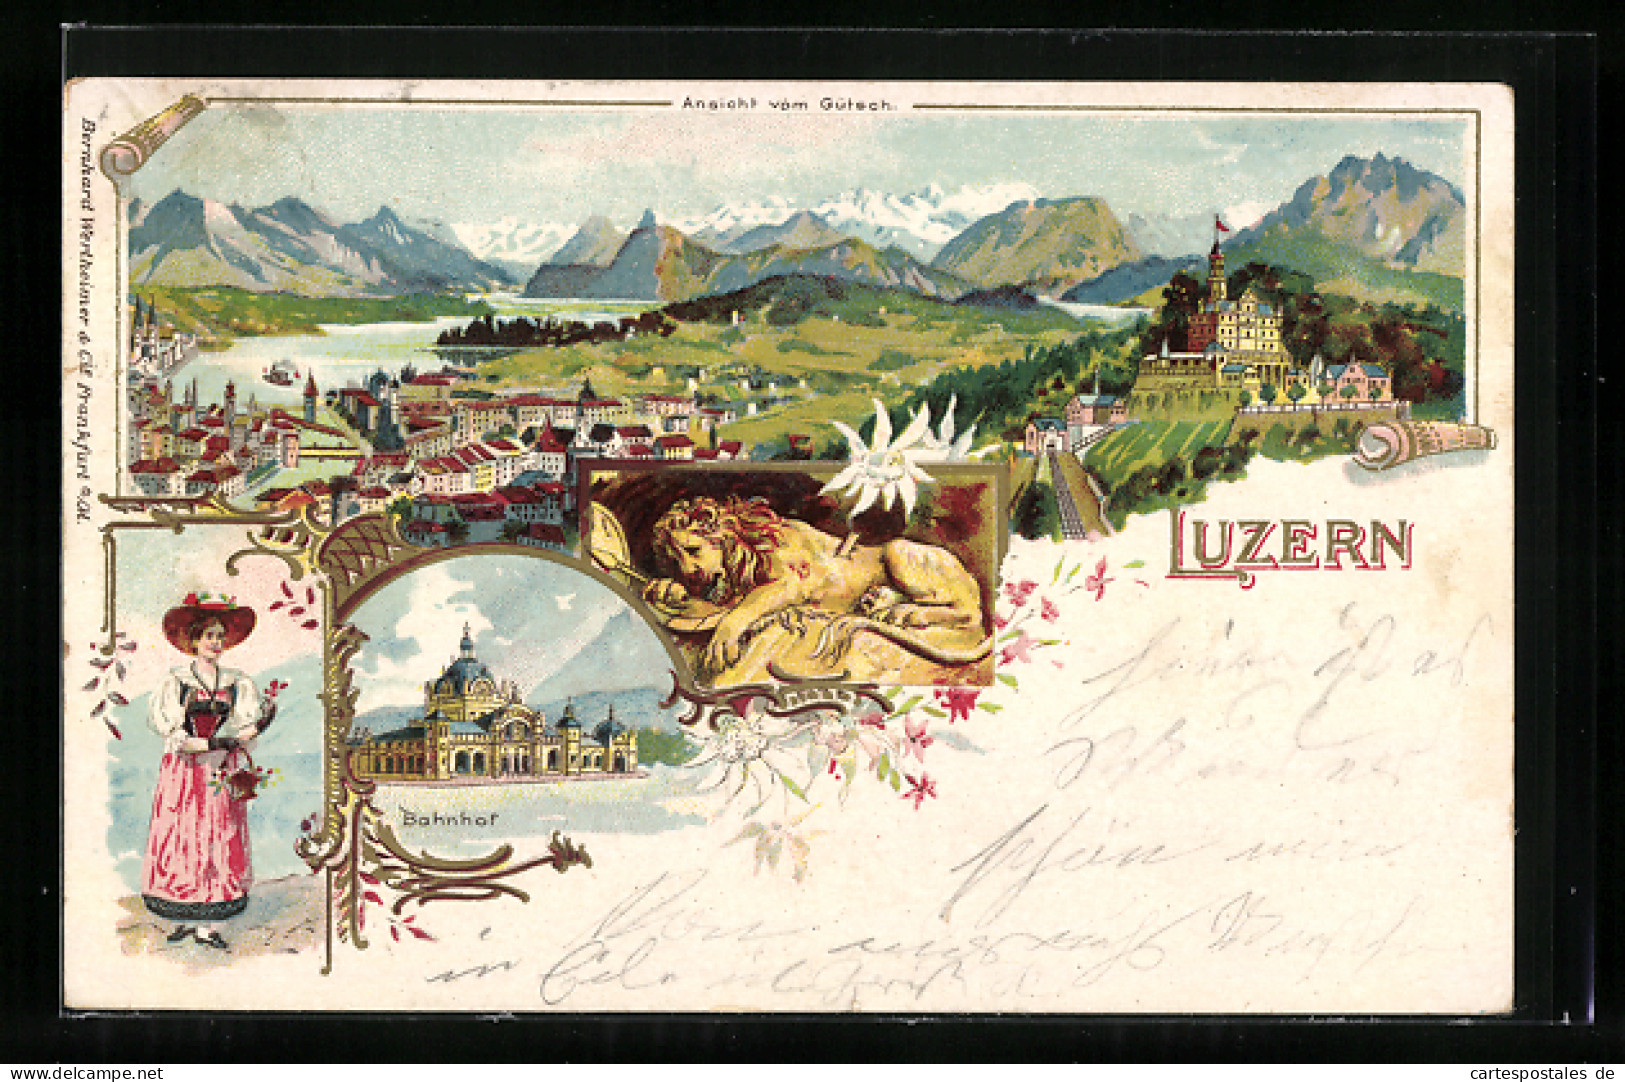 Lithographie Luzern, Bahnhof, Ansicht Vom Gütsch  - Luzern